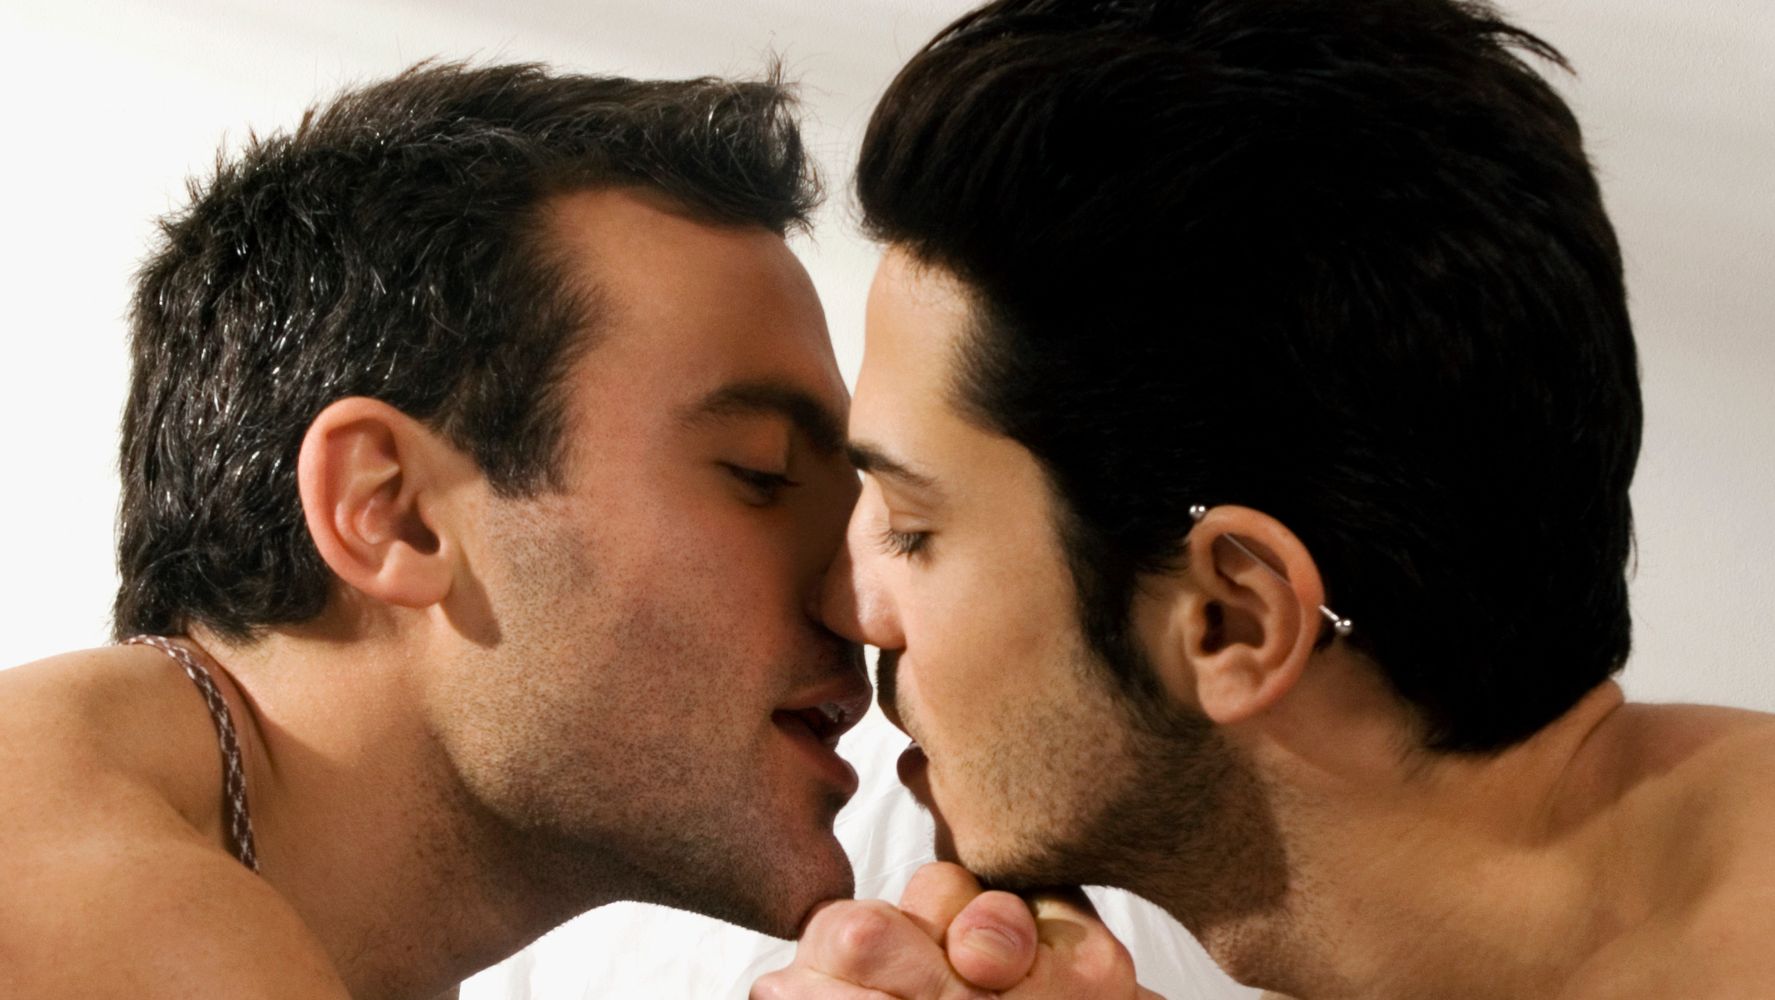 Is brad rutter gay - 🧡 Shirtless Men On The Blog: Brad Kalvo & Tyler M...